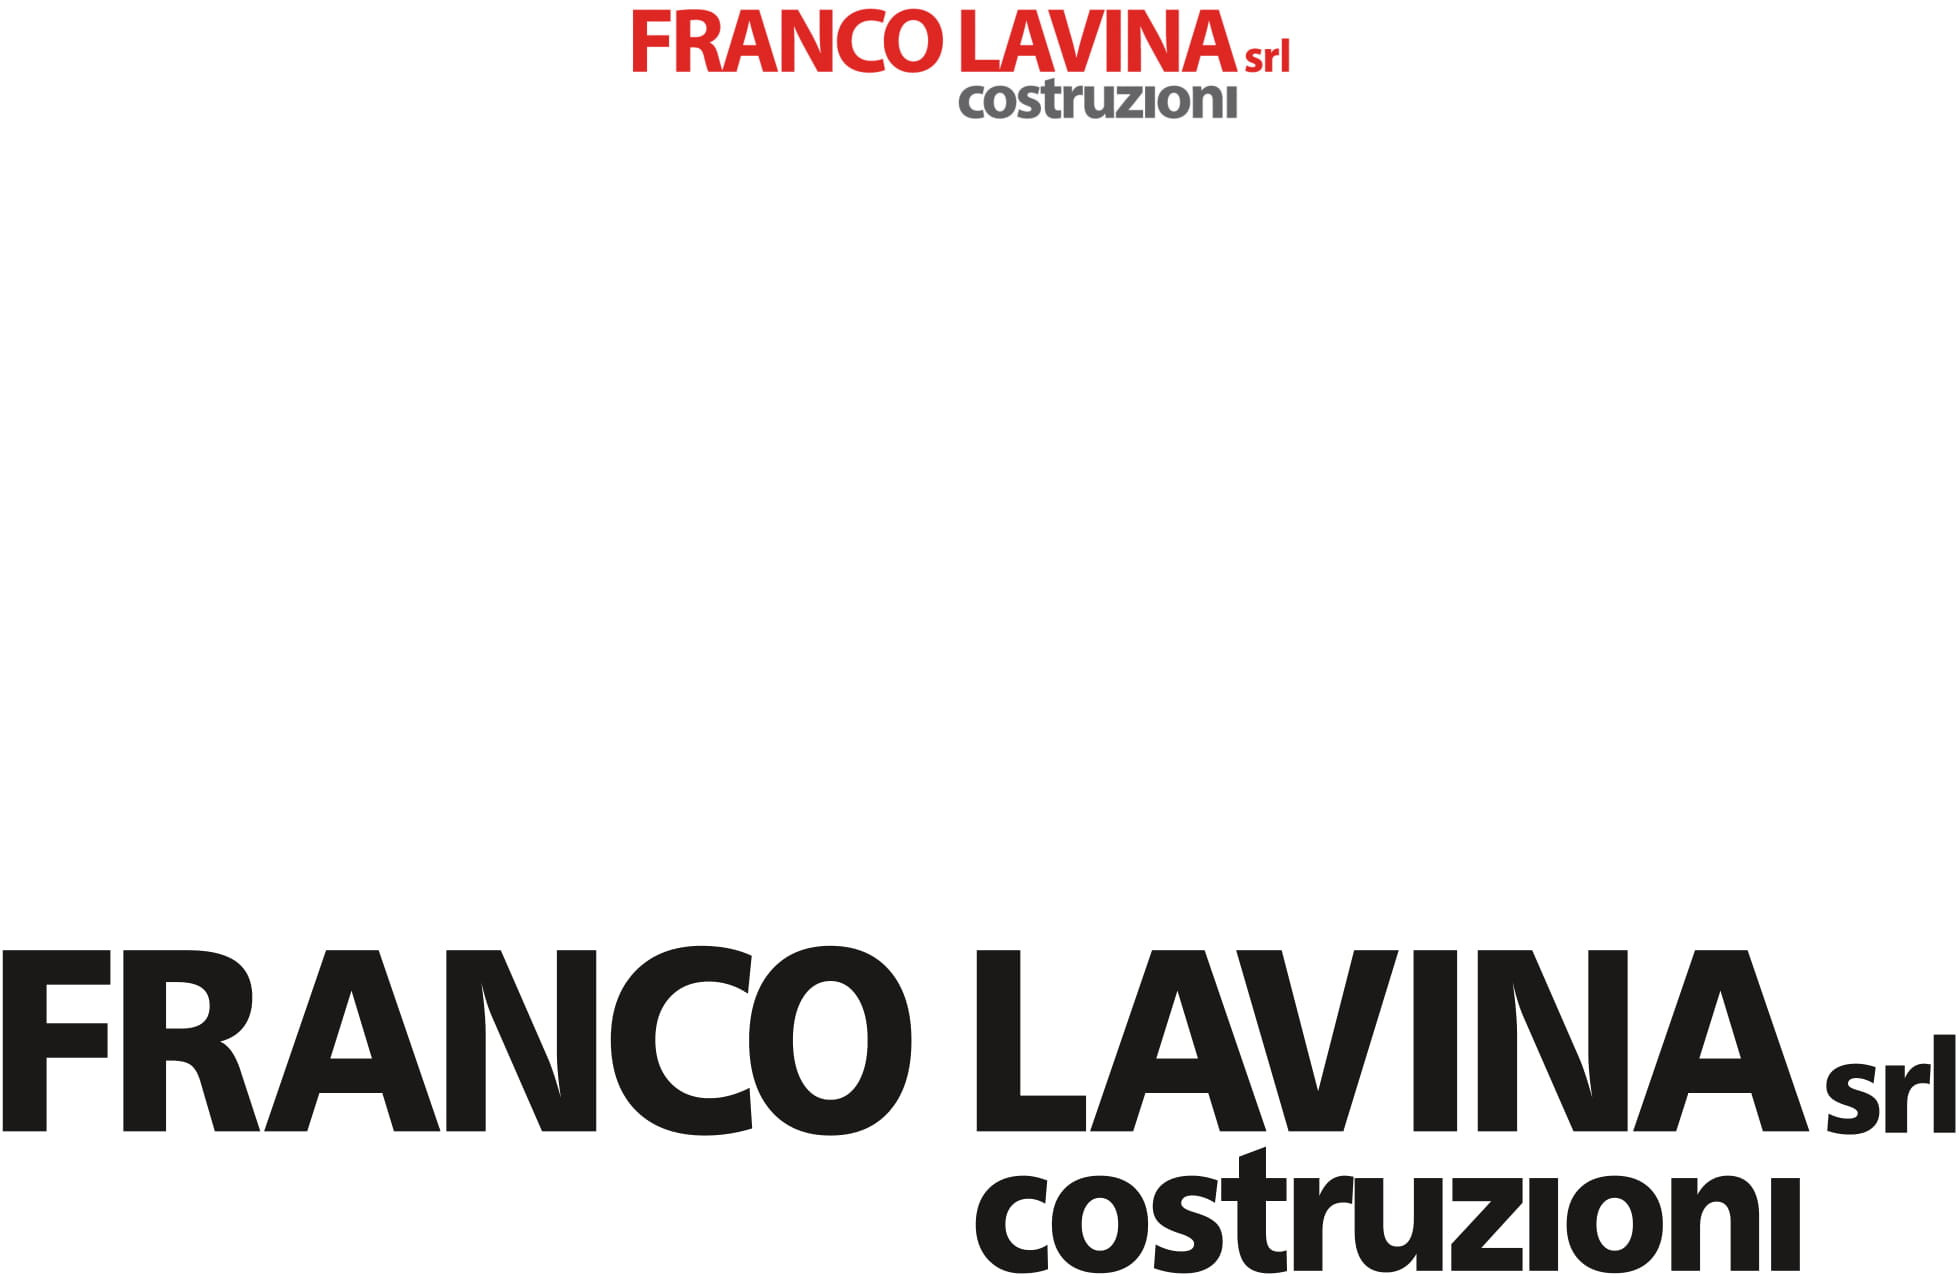 Franco Lavina Costruzioni 